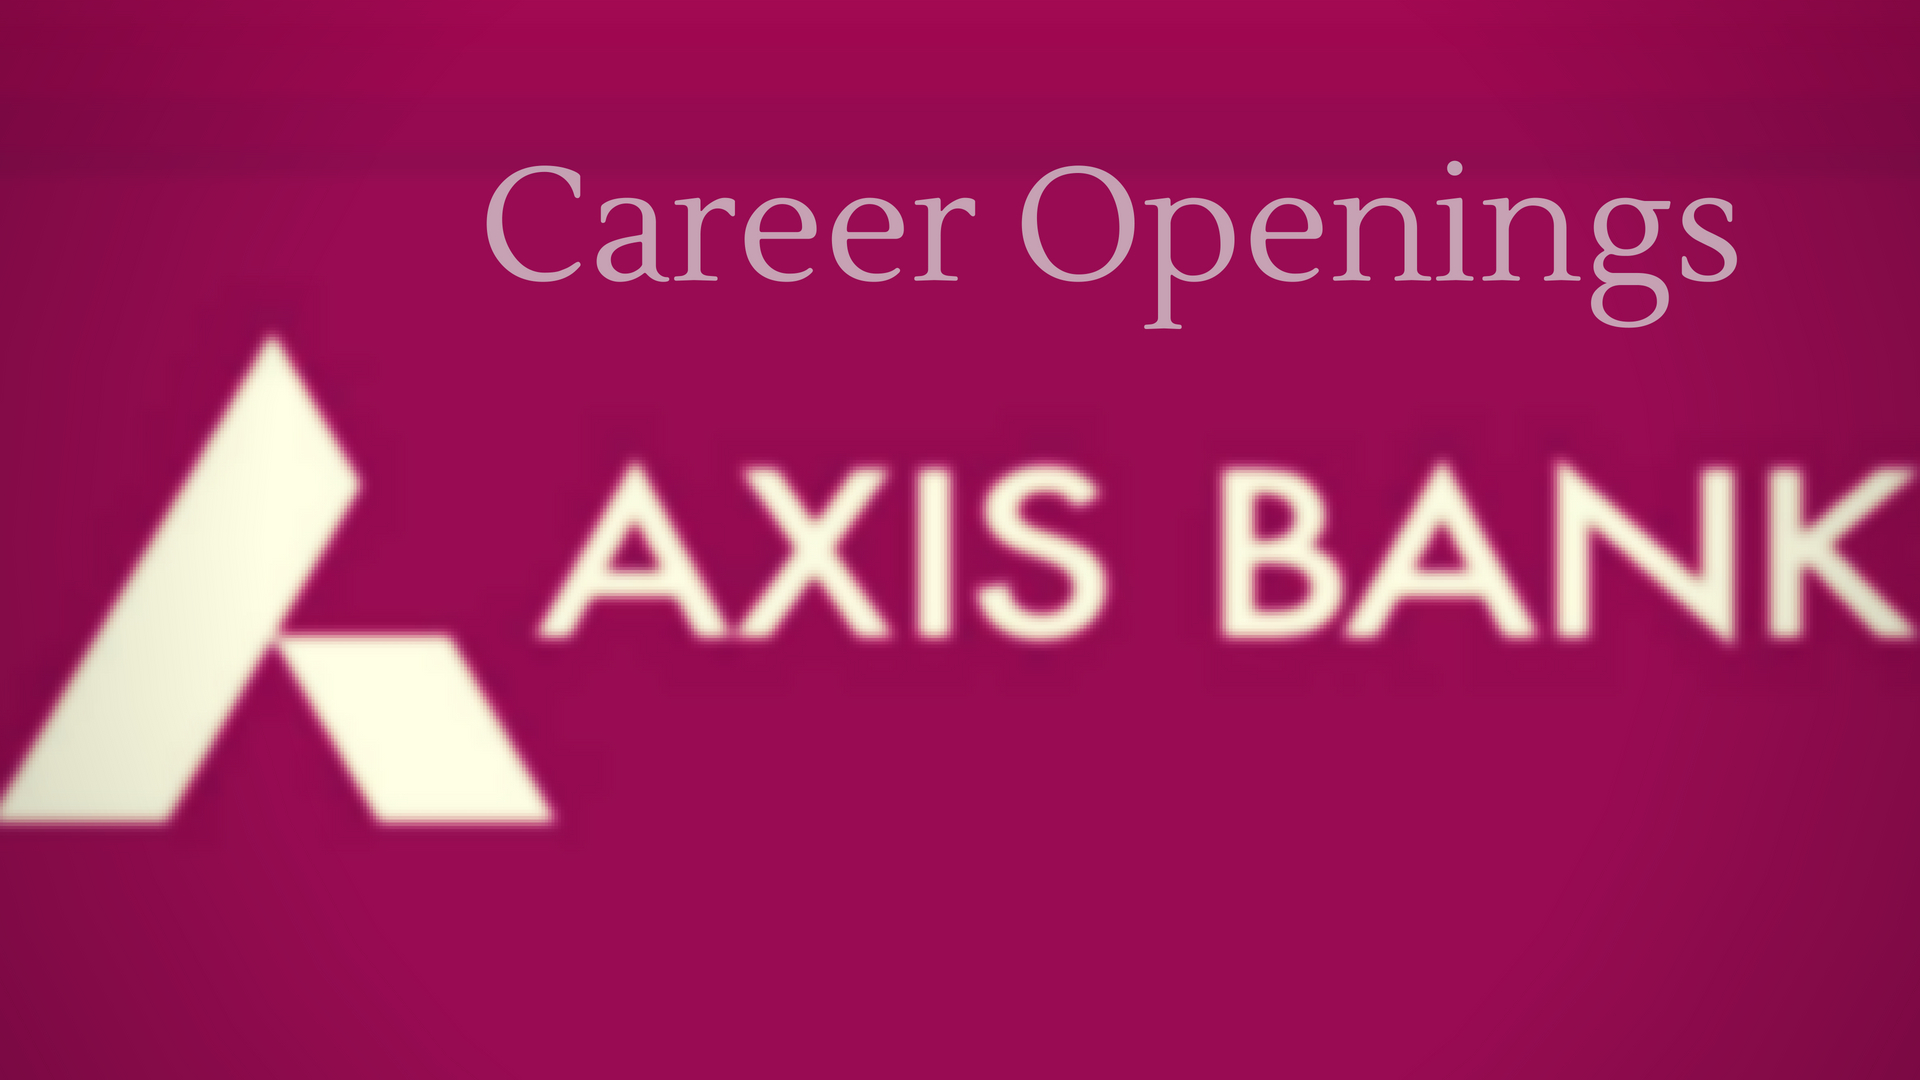 Axis bank latest vacancies